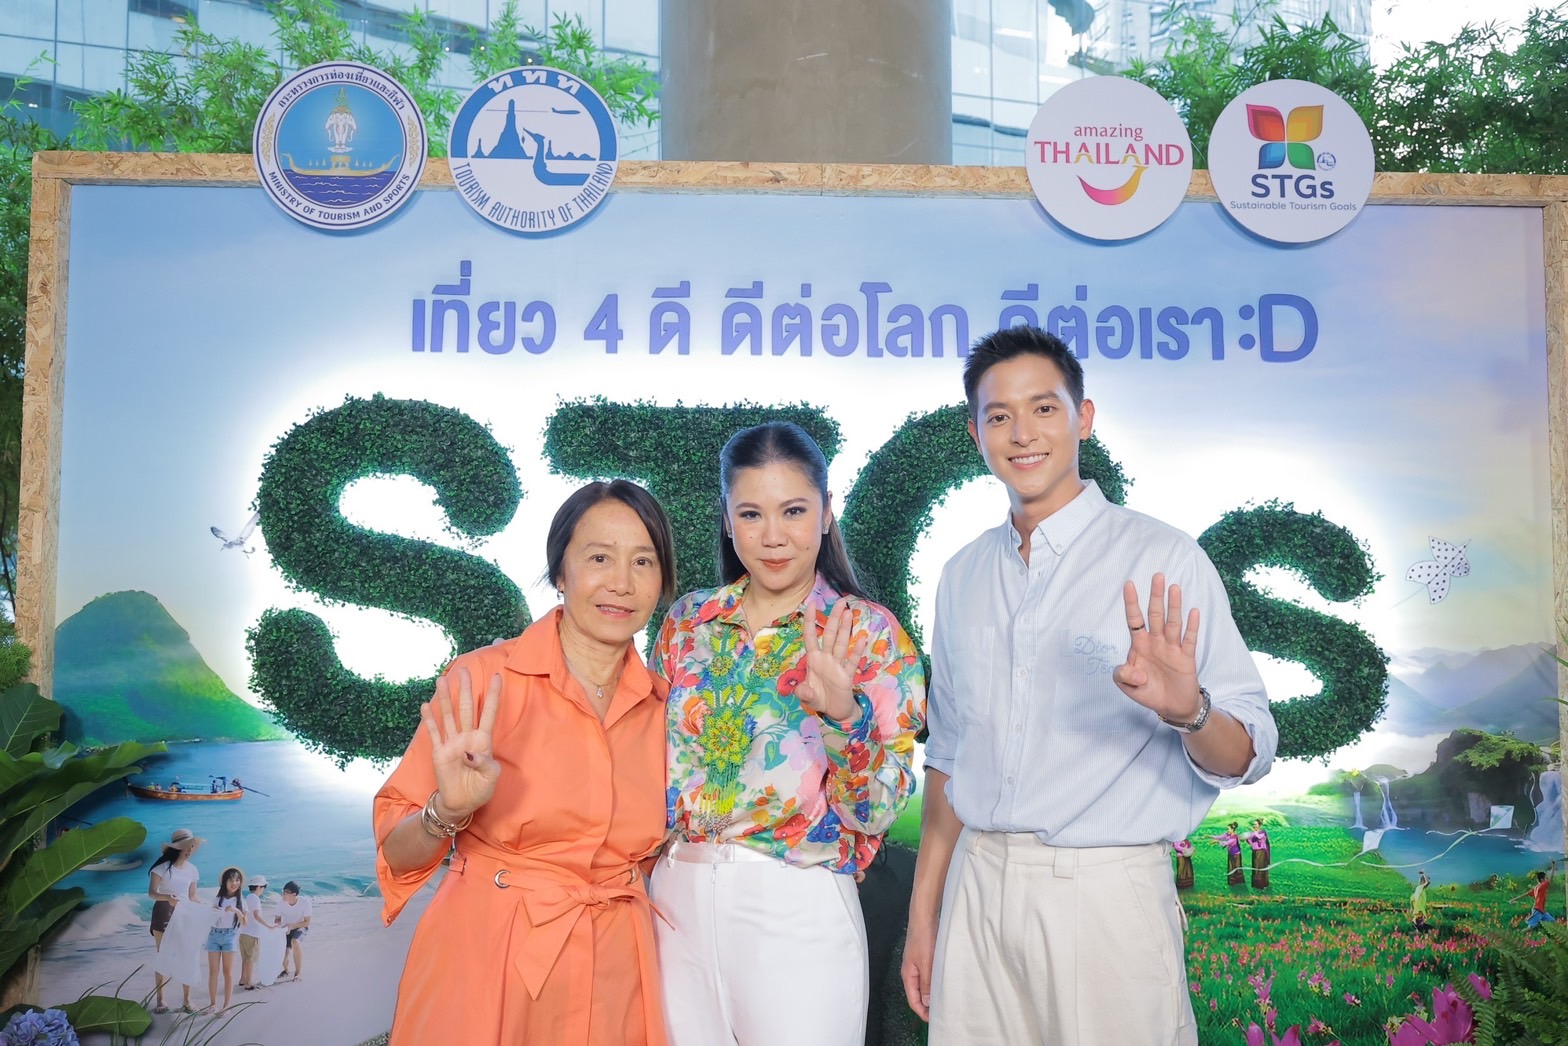 ททท. ดึง “เจมส์จิ” ชวนเที่ยวไทย เปิดโครงการ “STGs เที่ยว 4 ดี ดีต่อโลก ดีต่อเรา” 